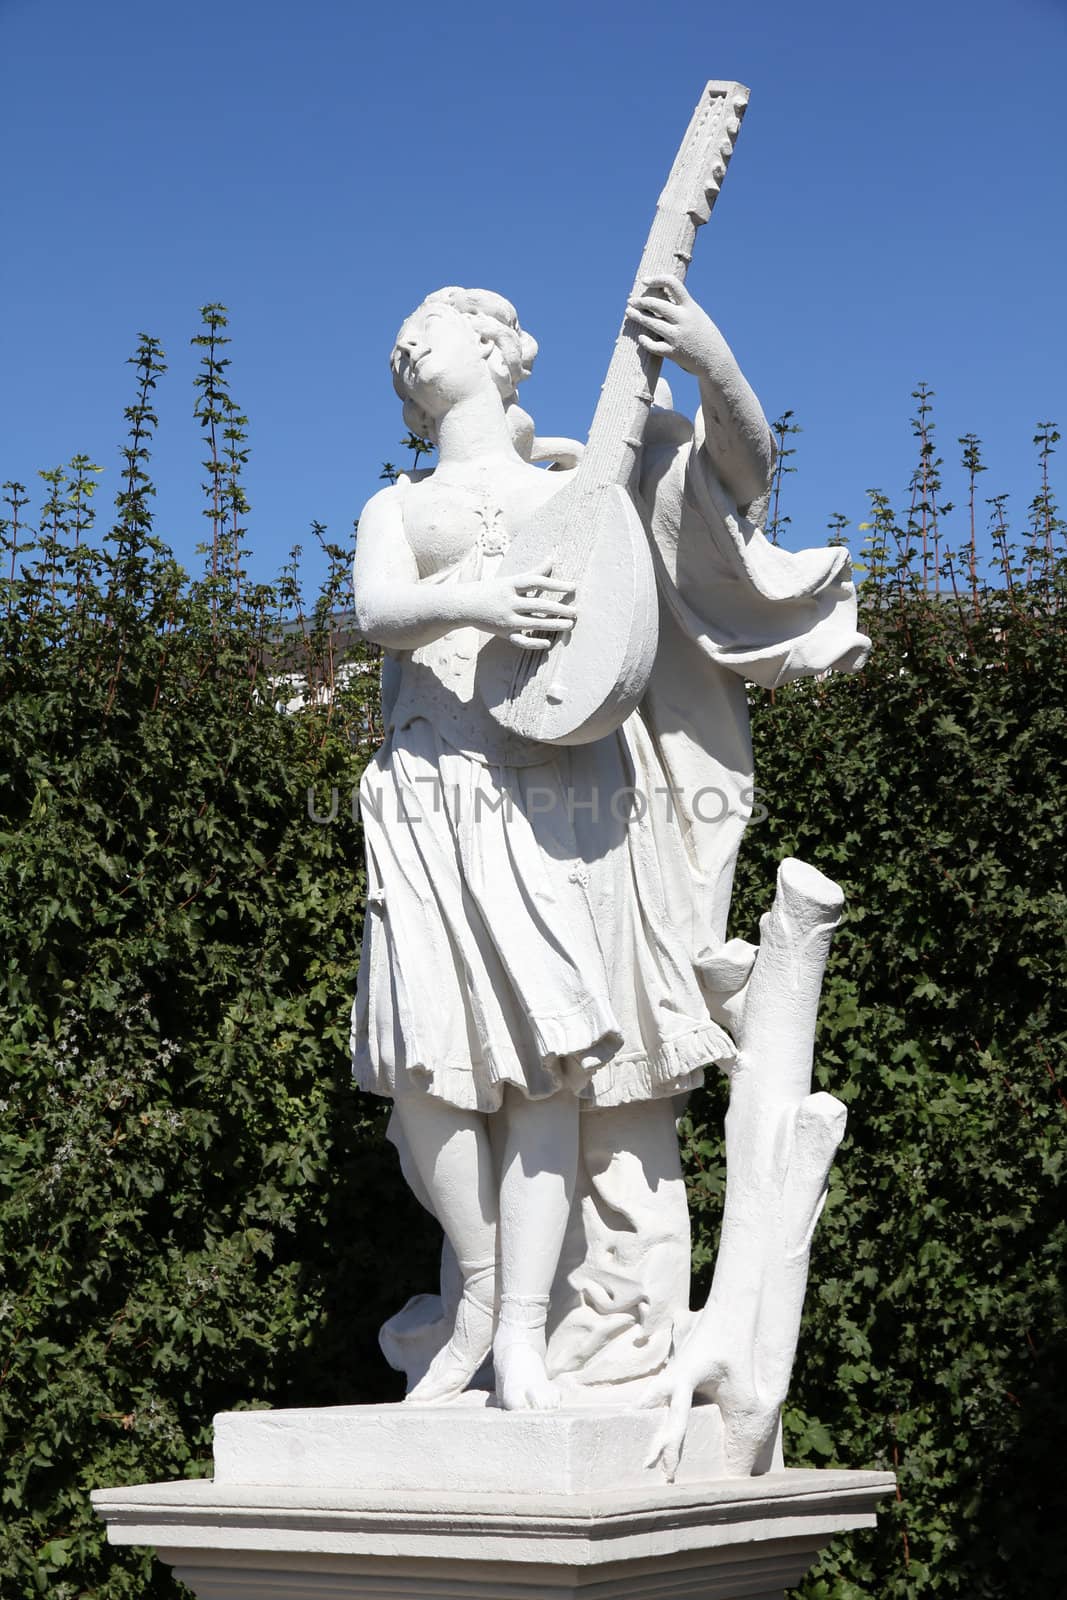 Vienna, Austria - statue of music player in Belvedere Gardens, a UNESCO World Heritage Site.